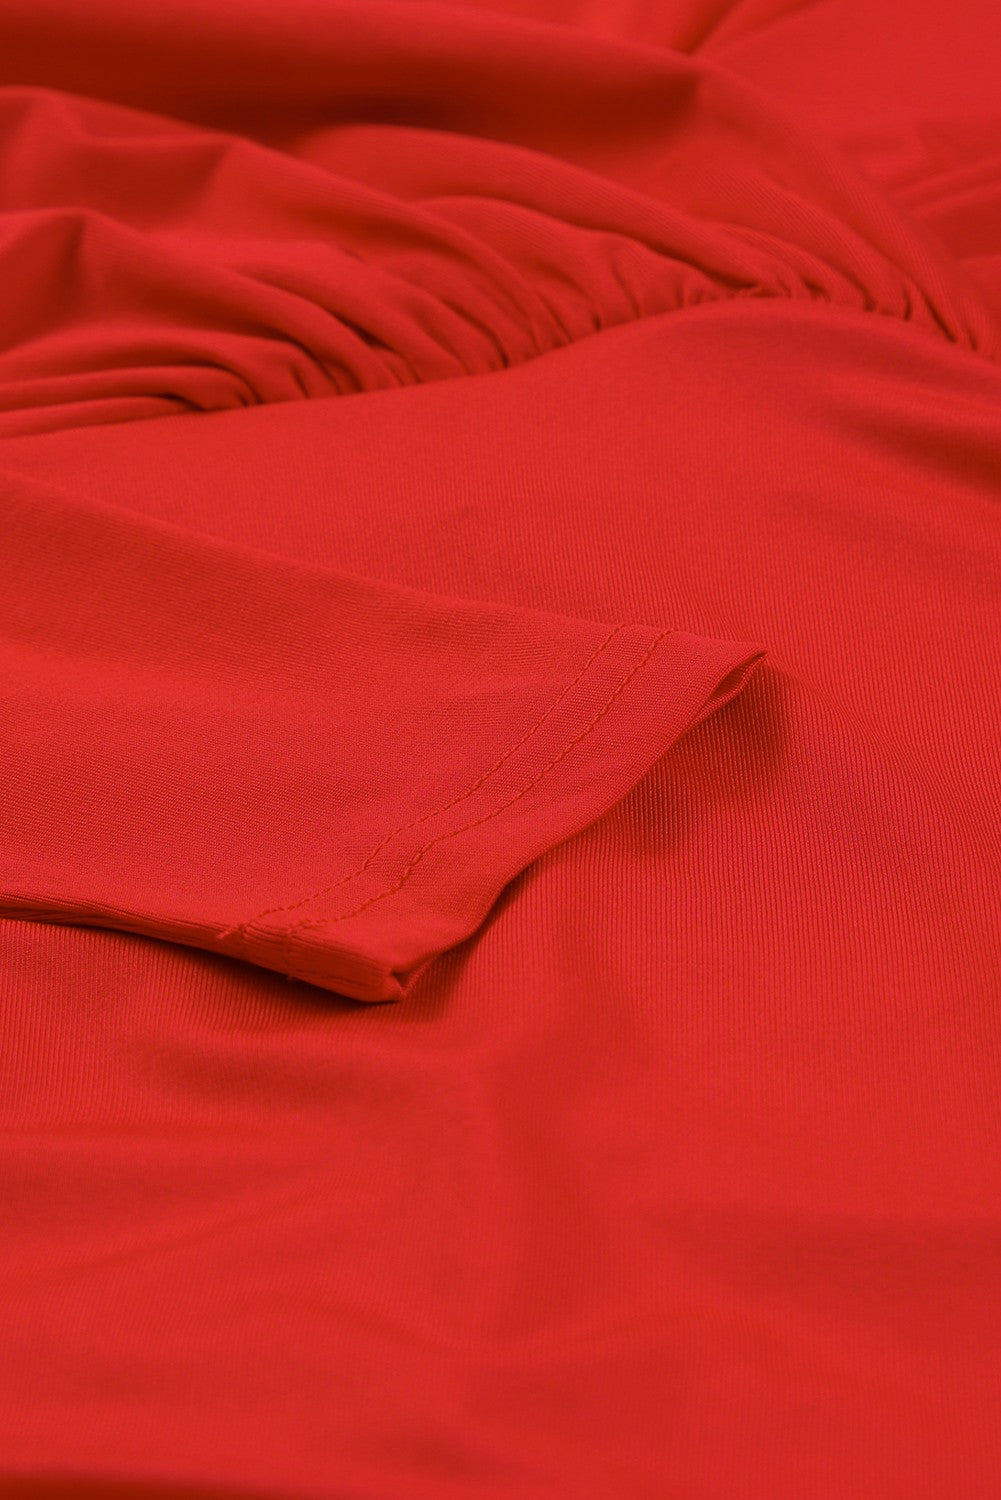 Feuriges, rotes, langärmliges, figurbetontes Wickelkleid mit V-Ausschnitt und Rüschen